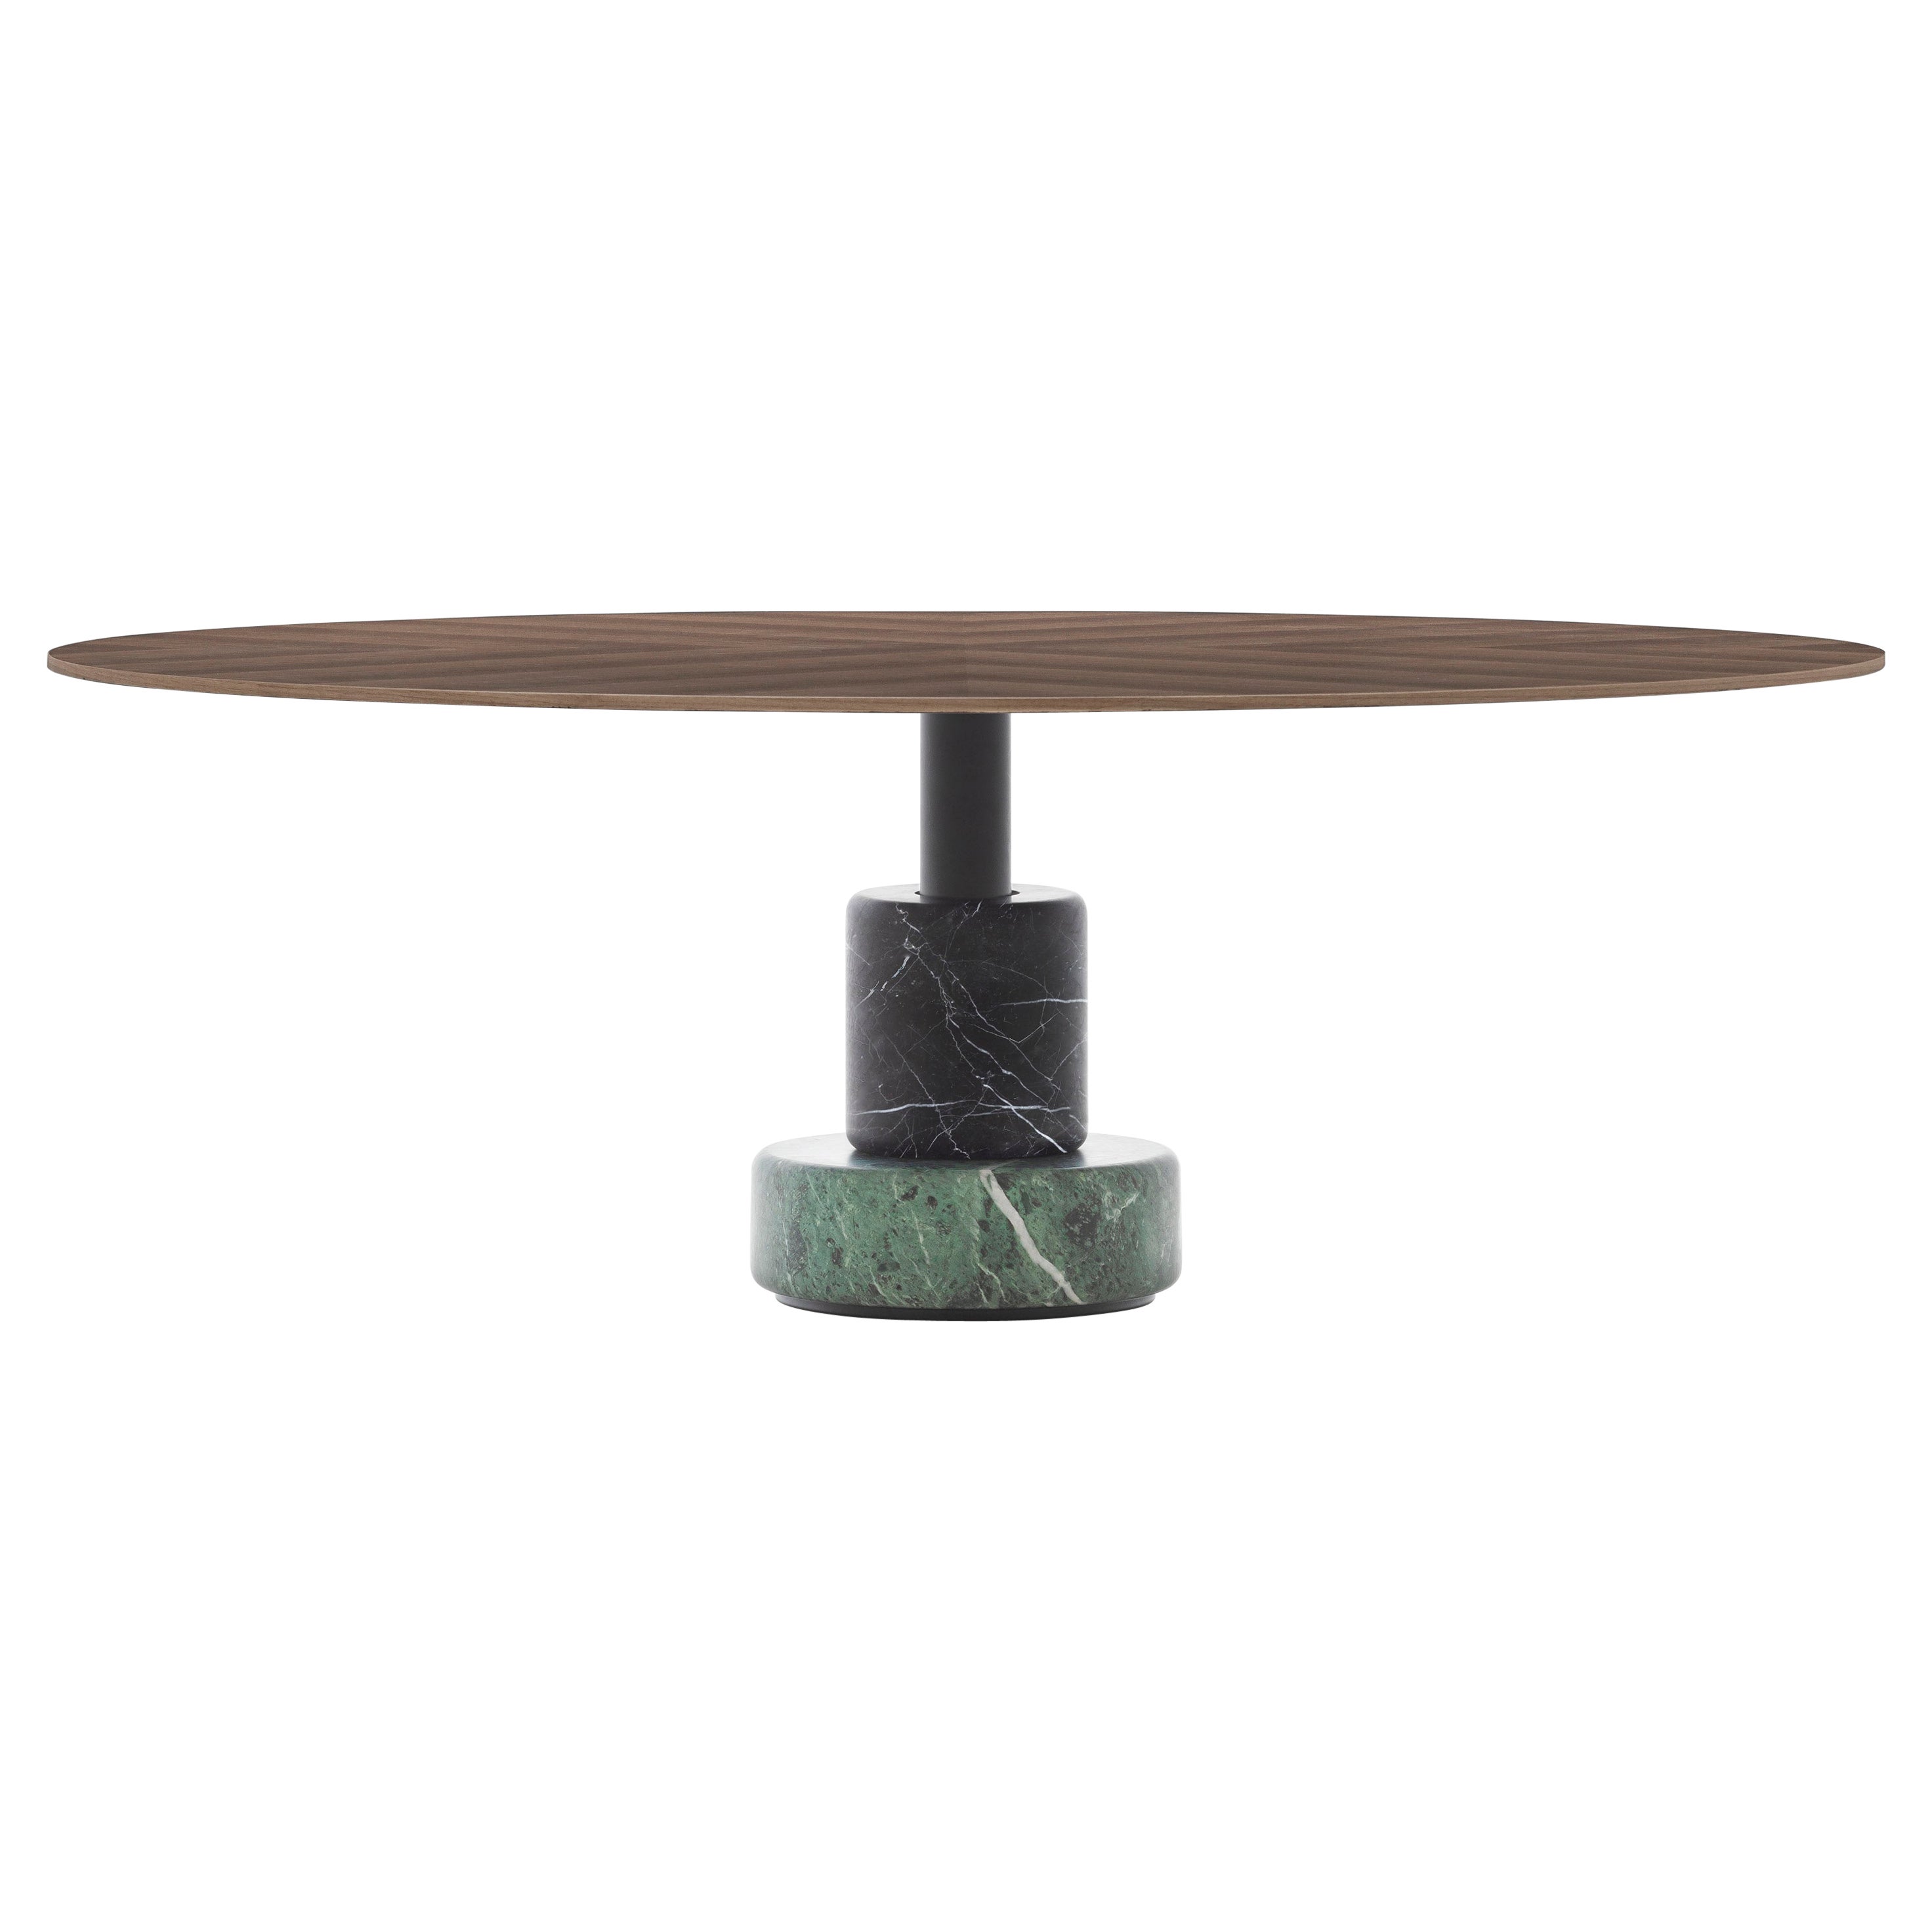 Acerbis Large Menhir Coffee Table in Green/Black Marble Base & Dark Walnut Top